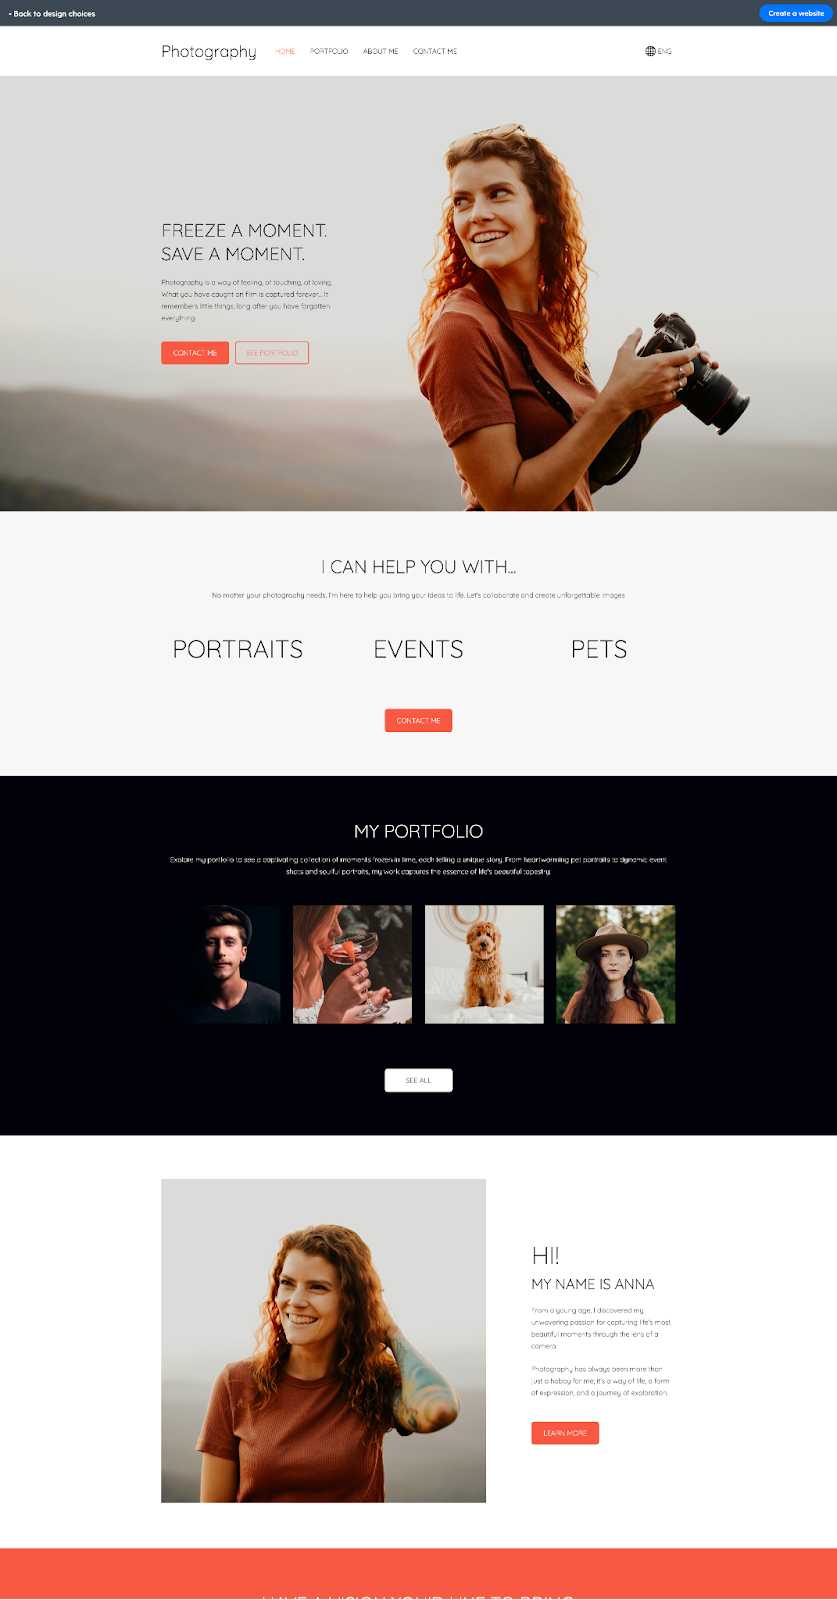 Template for a portfolio website by Mozello.